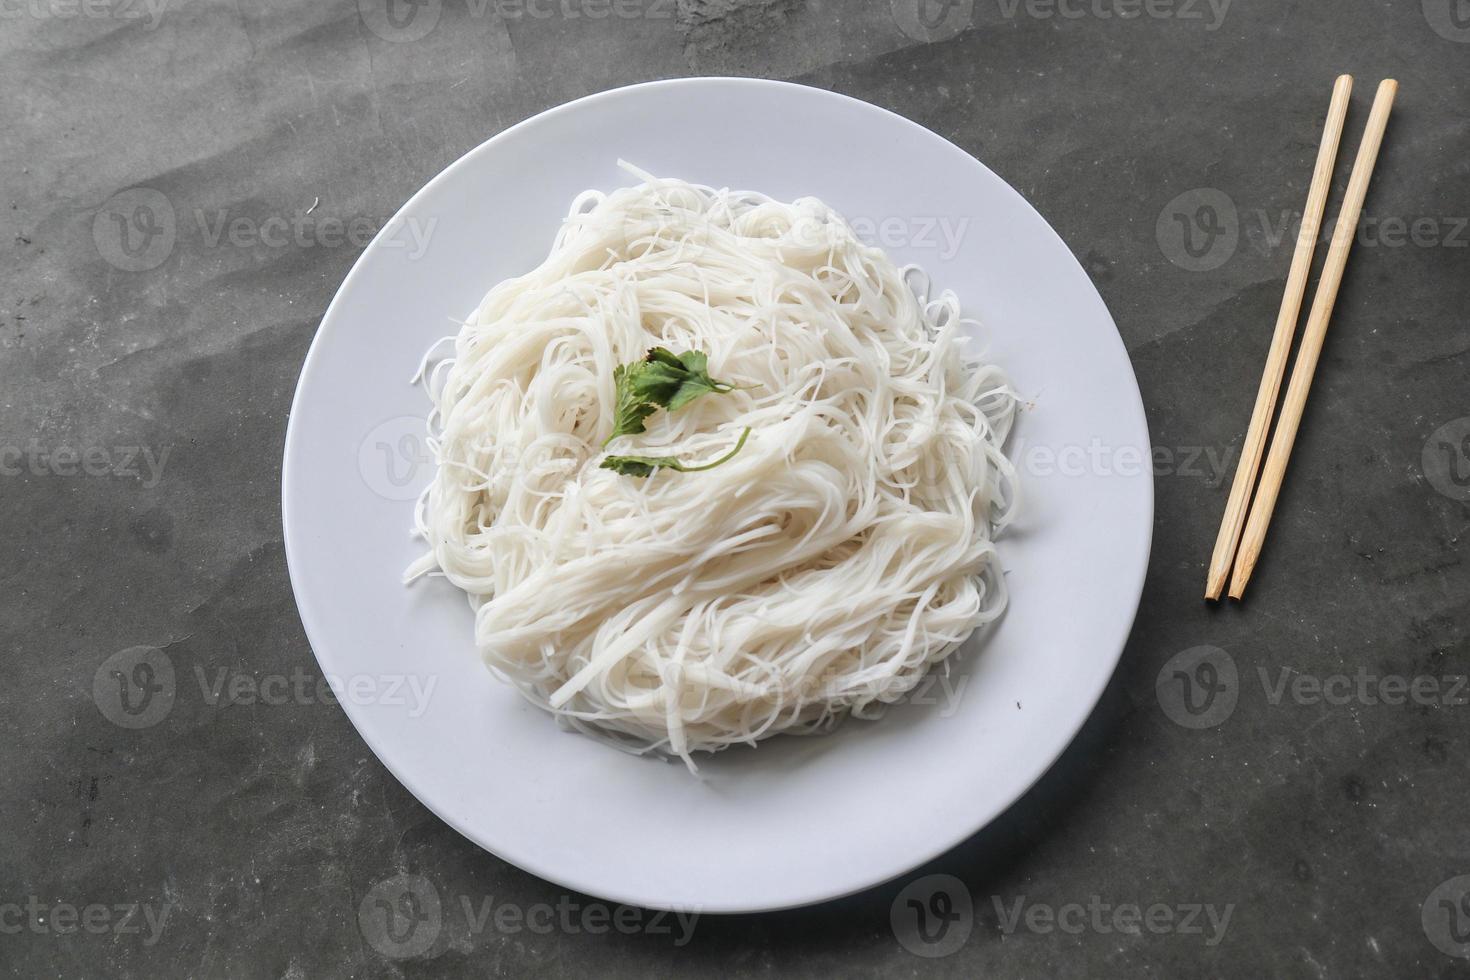 bihun ou aletria ou macarrão de arroz ou cabelo de anjo servido em prato isolado em fundo preto foto